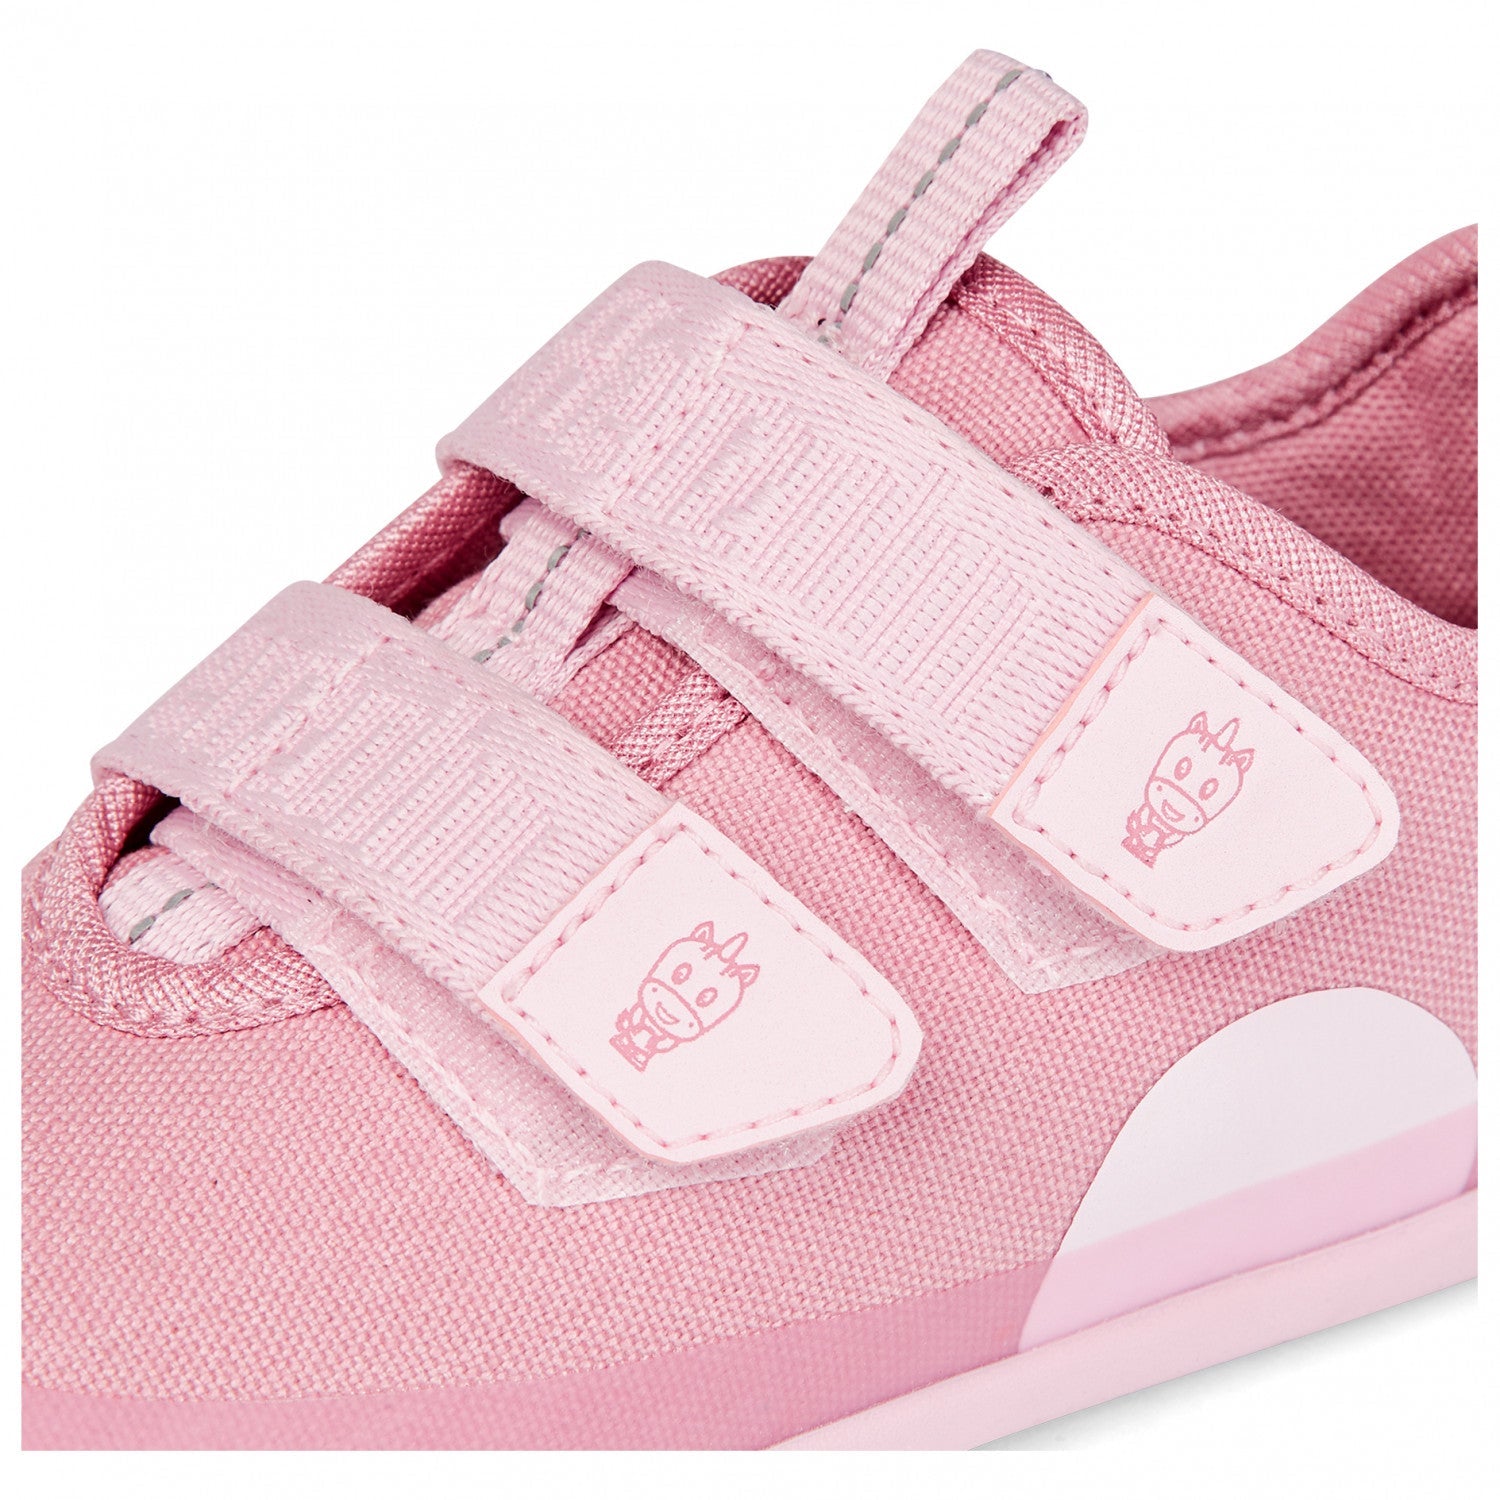 Affenzahn Low Cut Cotton Sneaker – EINHORN und weitere Kinderschuhe bei kippie.shop